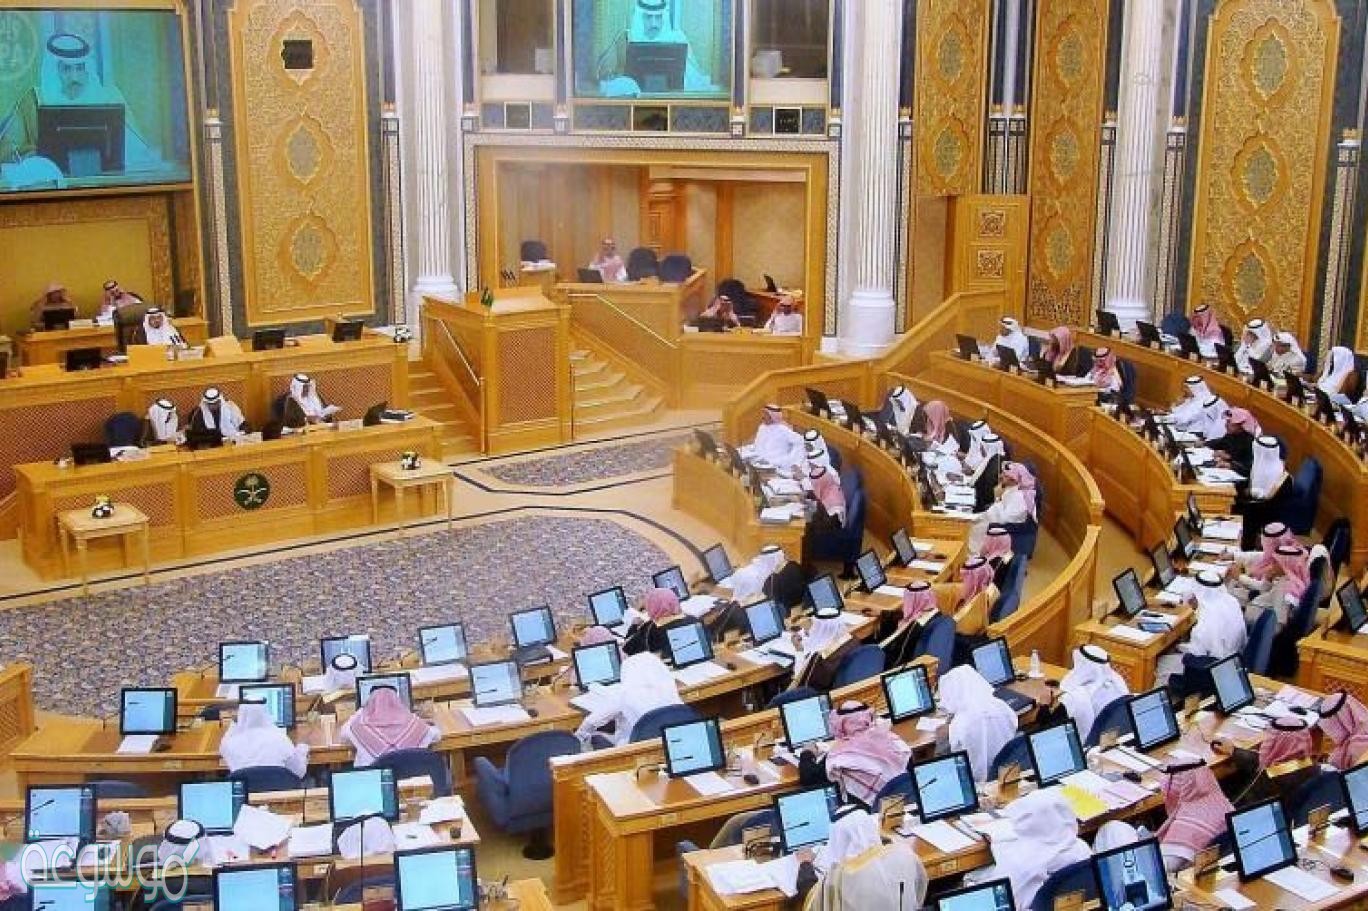 جلسة أسبوعين من مجلس بقرار الشورى عادية كل يعقد يعقد مجلس